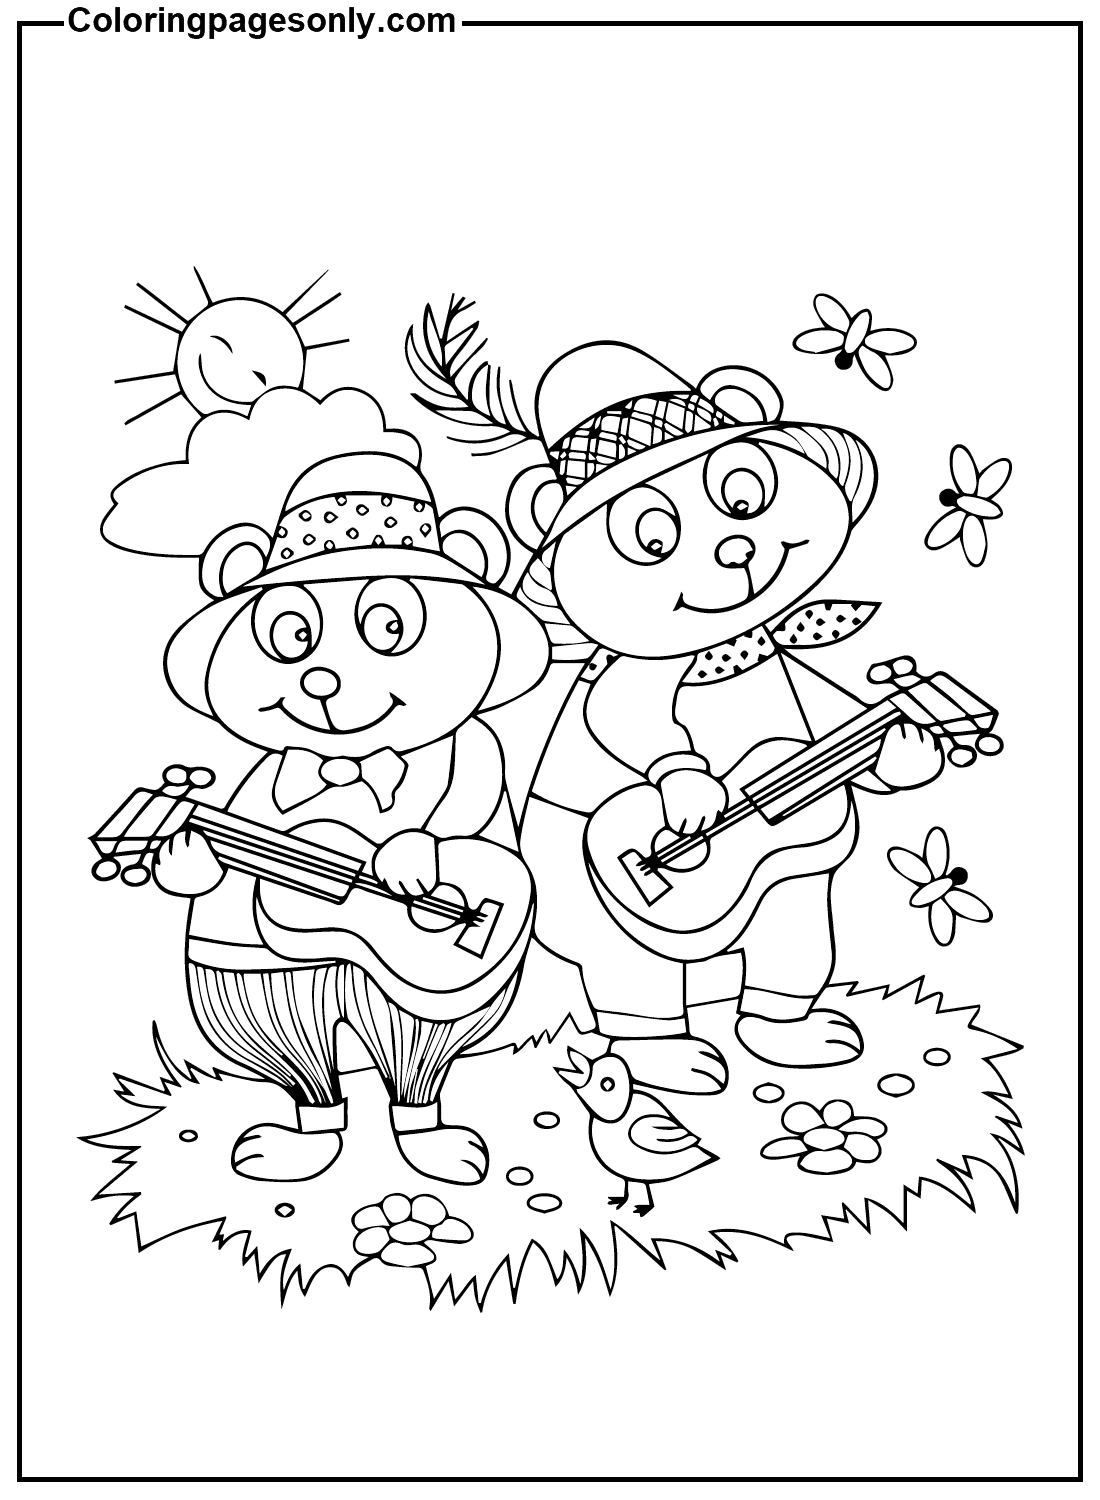 两只熊拿着吉他来自吉他